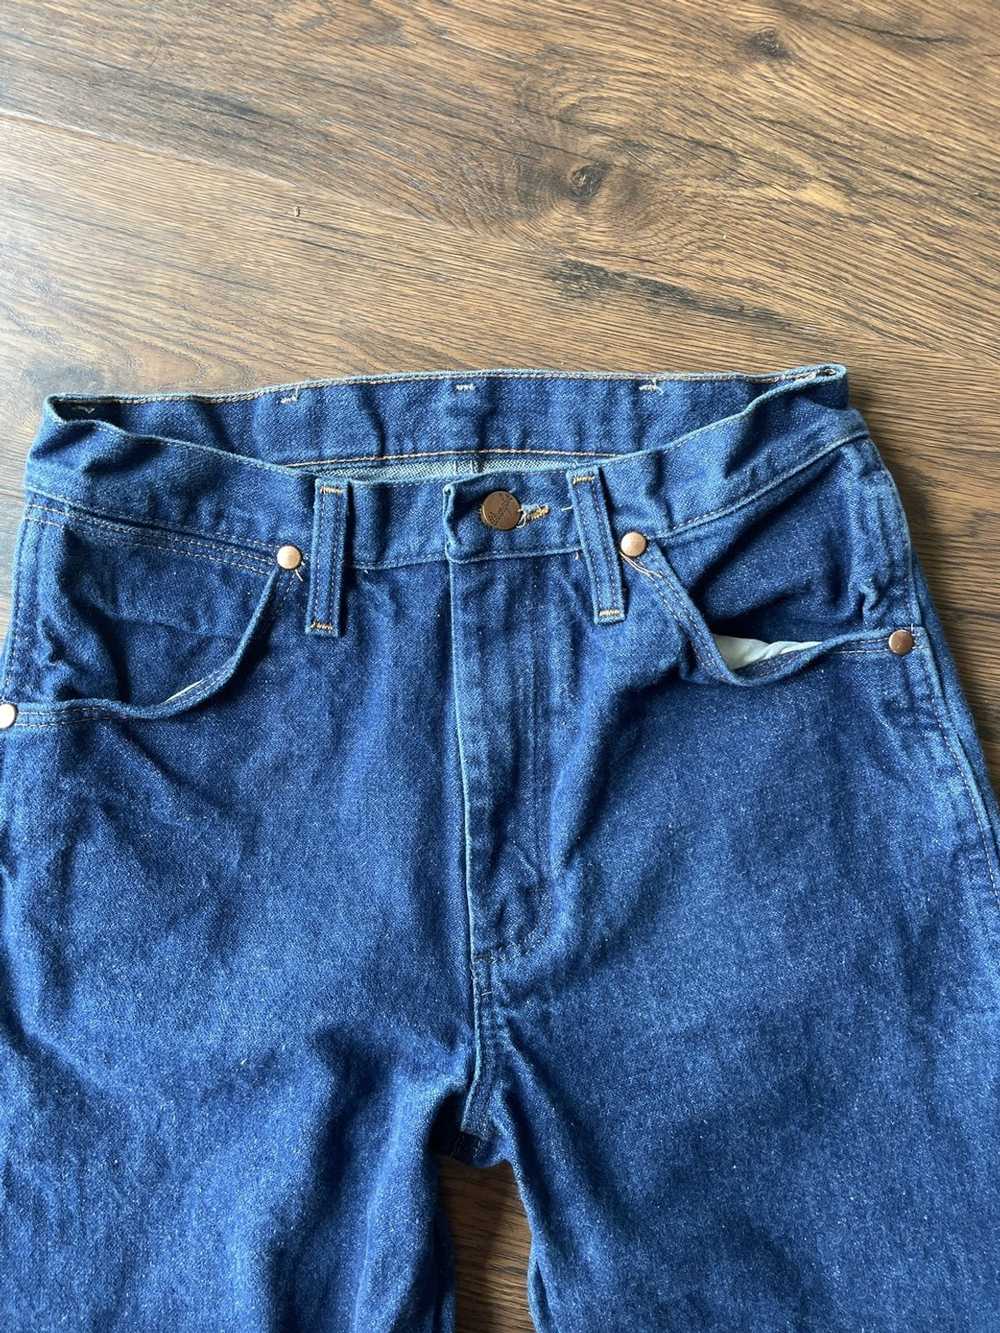 Wrangler wrangler jeans - image 2